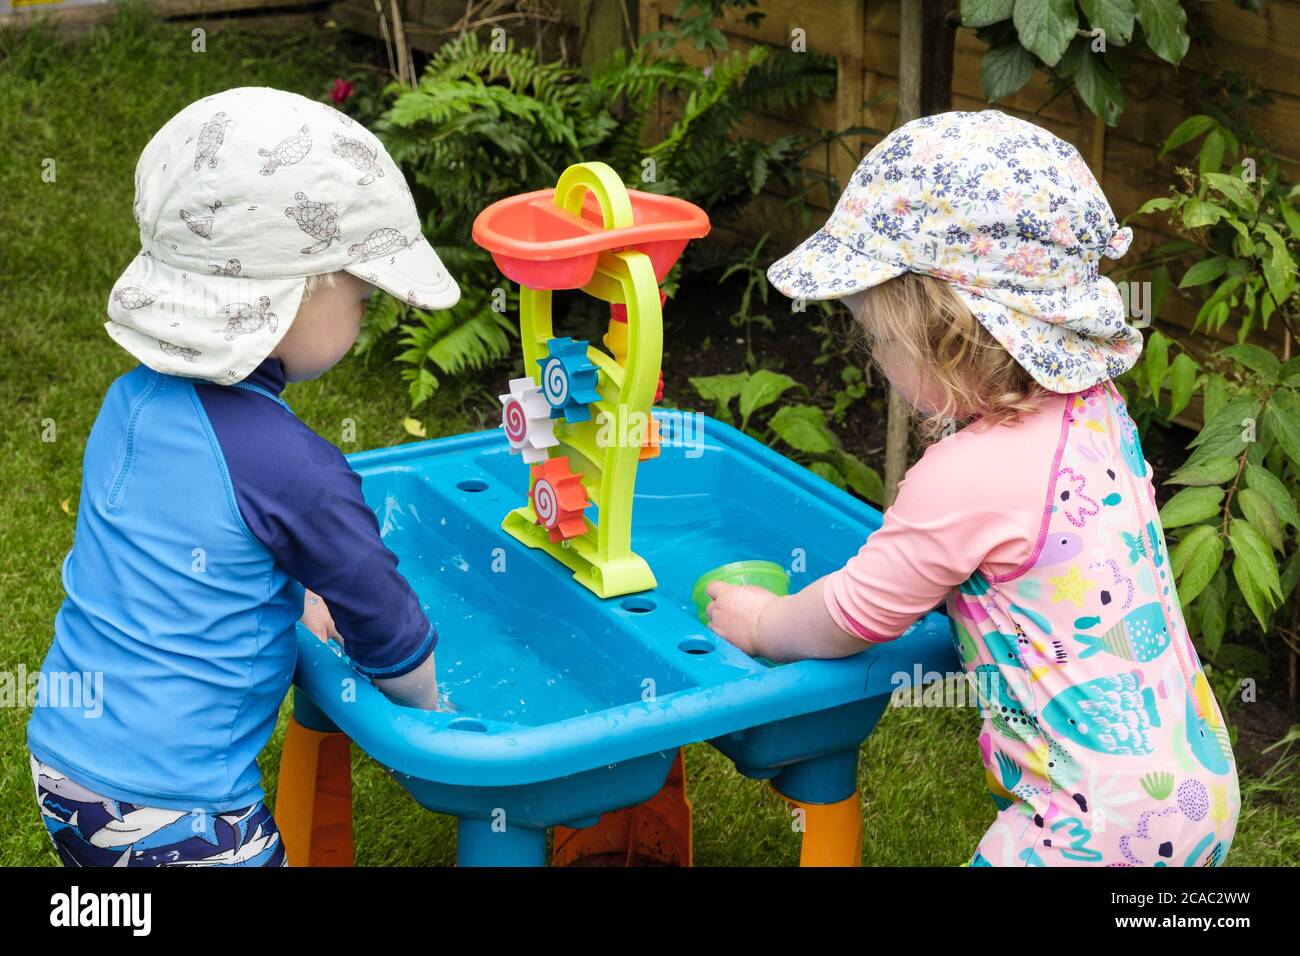 Image authentique de tout-petits jumeaux tout-petits jeunes enfants enfants enfants enfants qui jouent dans l'eau avec des jouets à l'extérieur dans un jardin en été. Angleterre Royaume-Uni Grande-Bretagne Banque D'Images